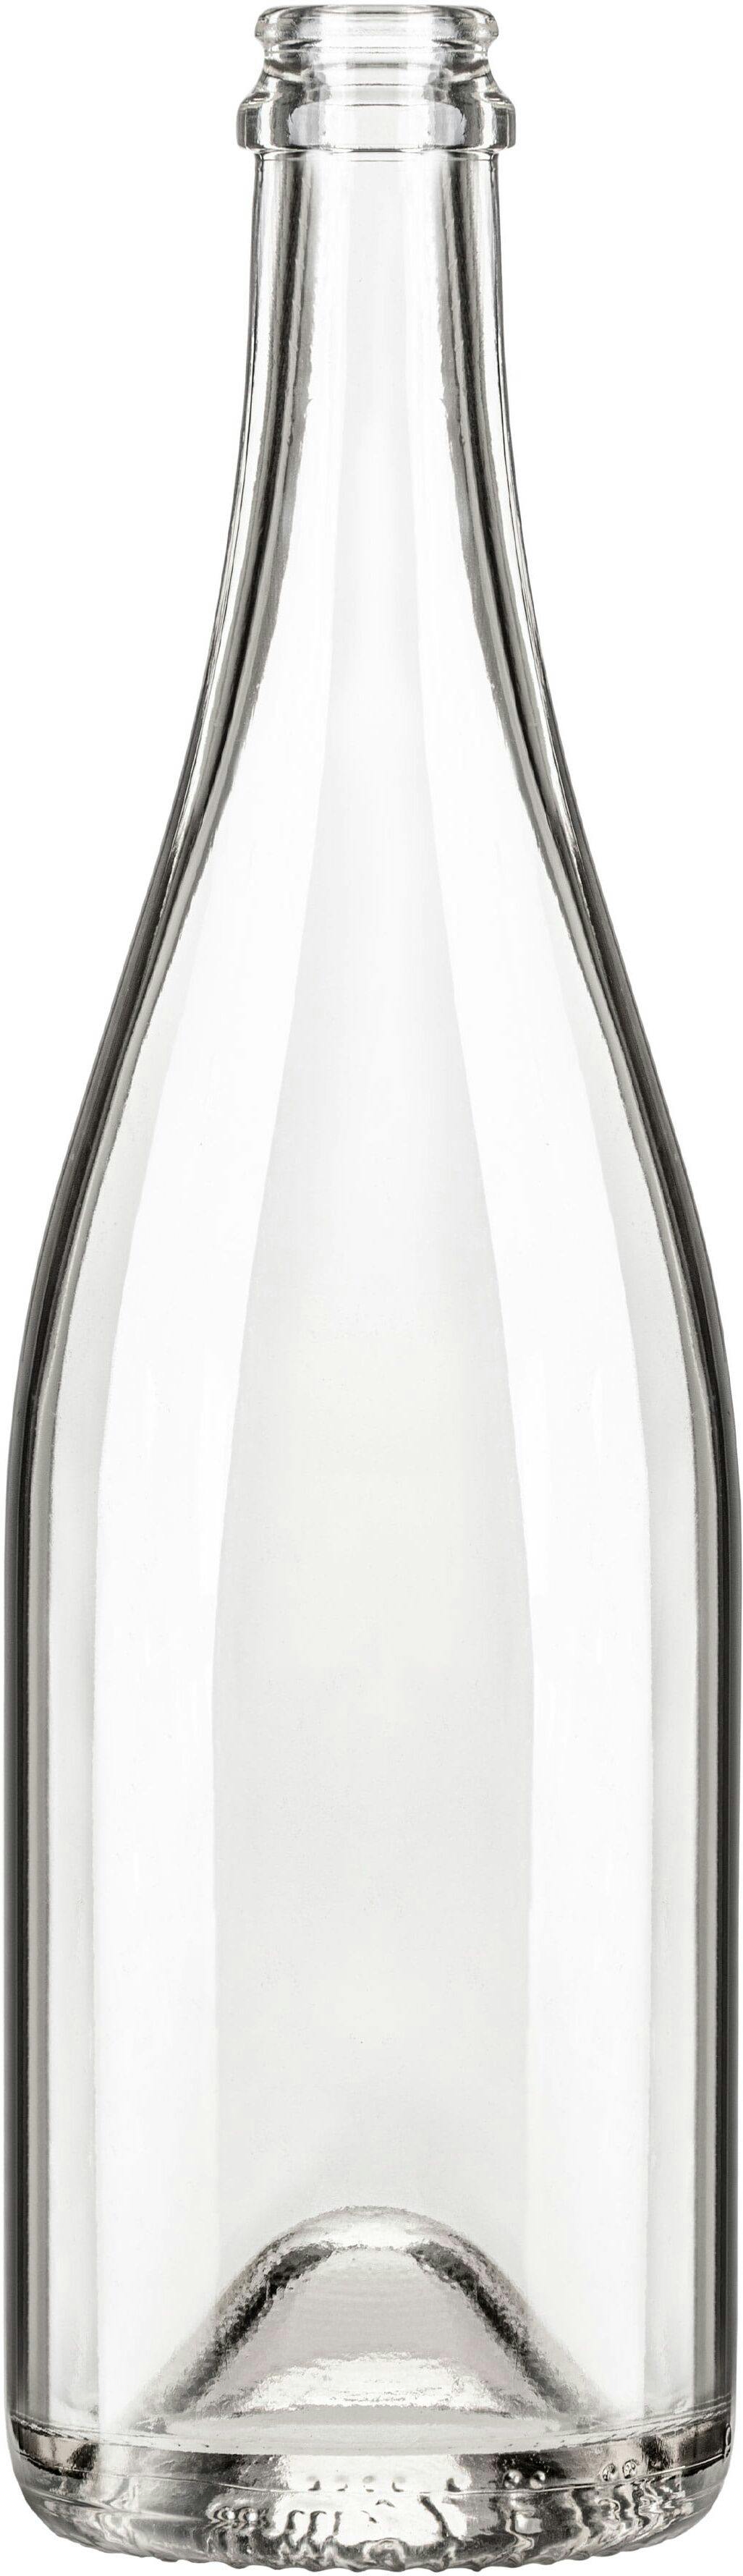 Bottiglia SPUM STD 750 ml BG-Sughero